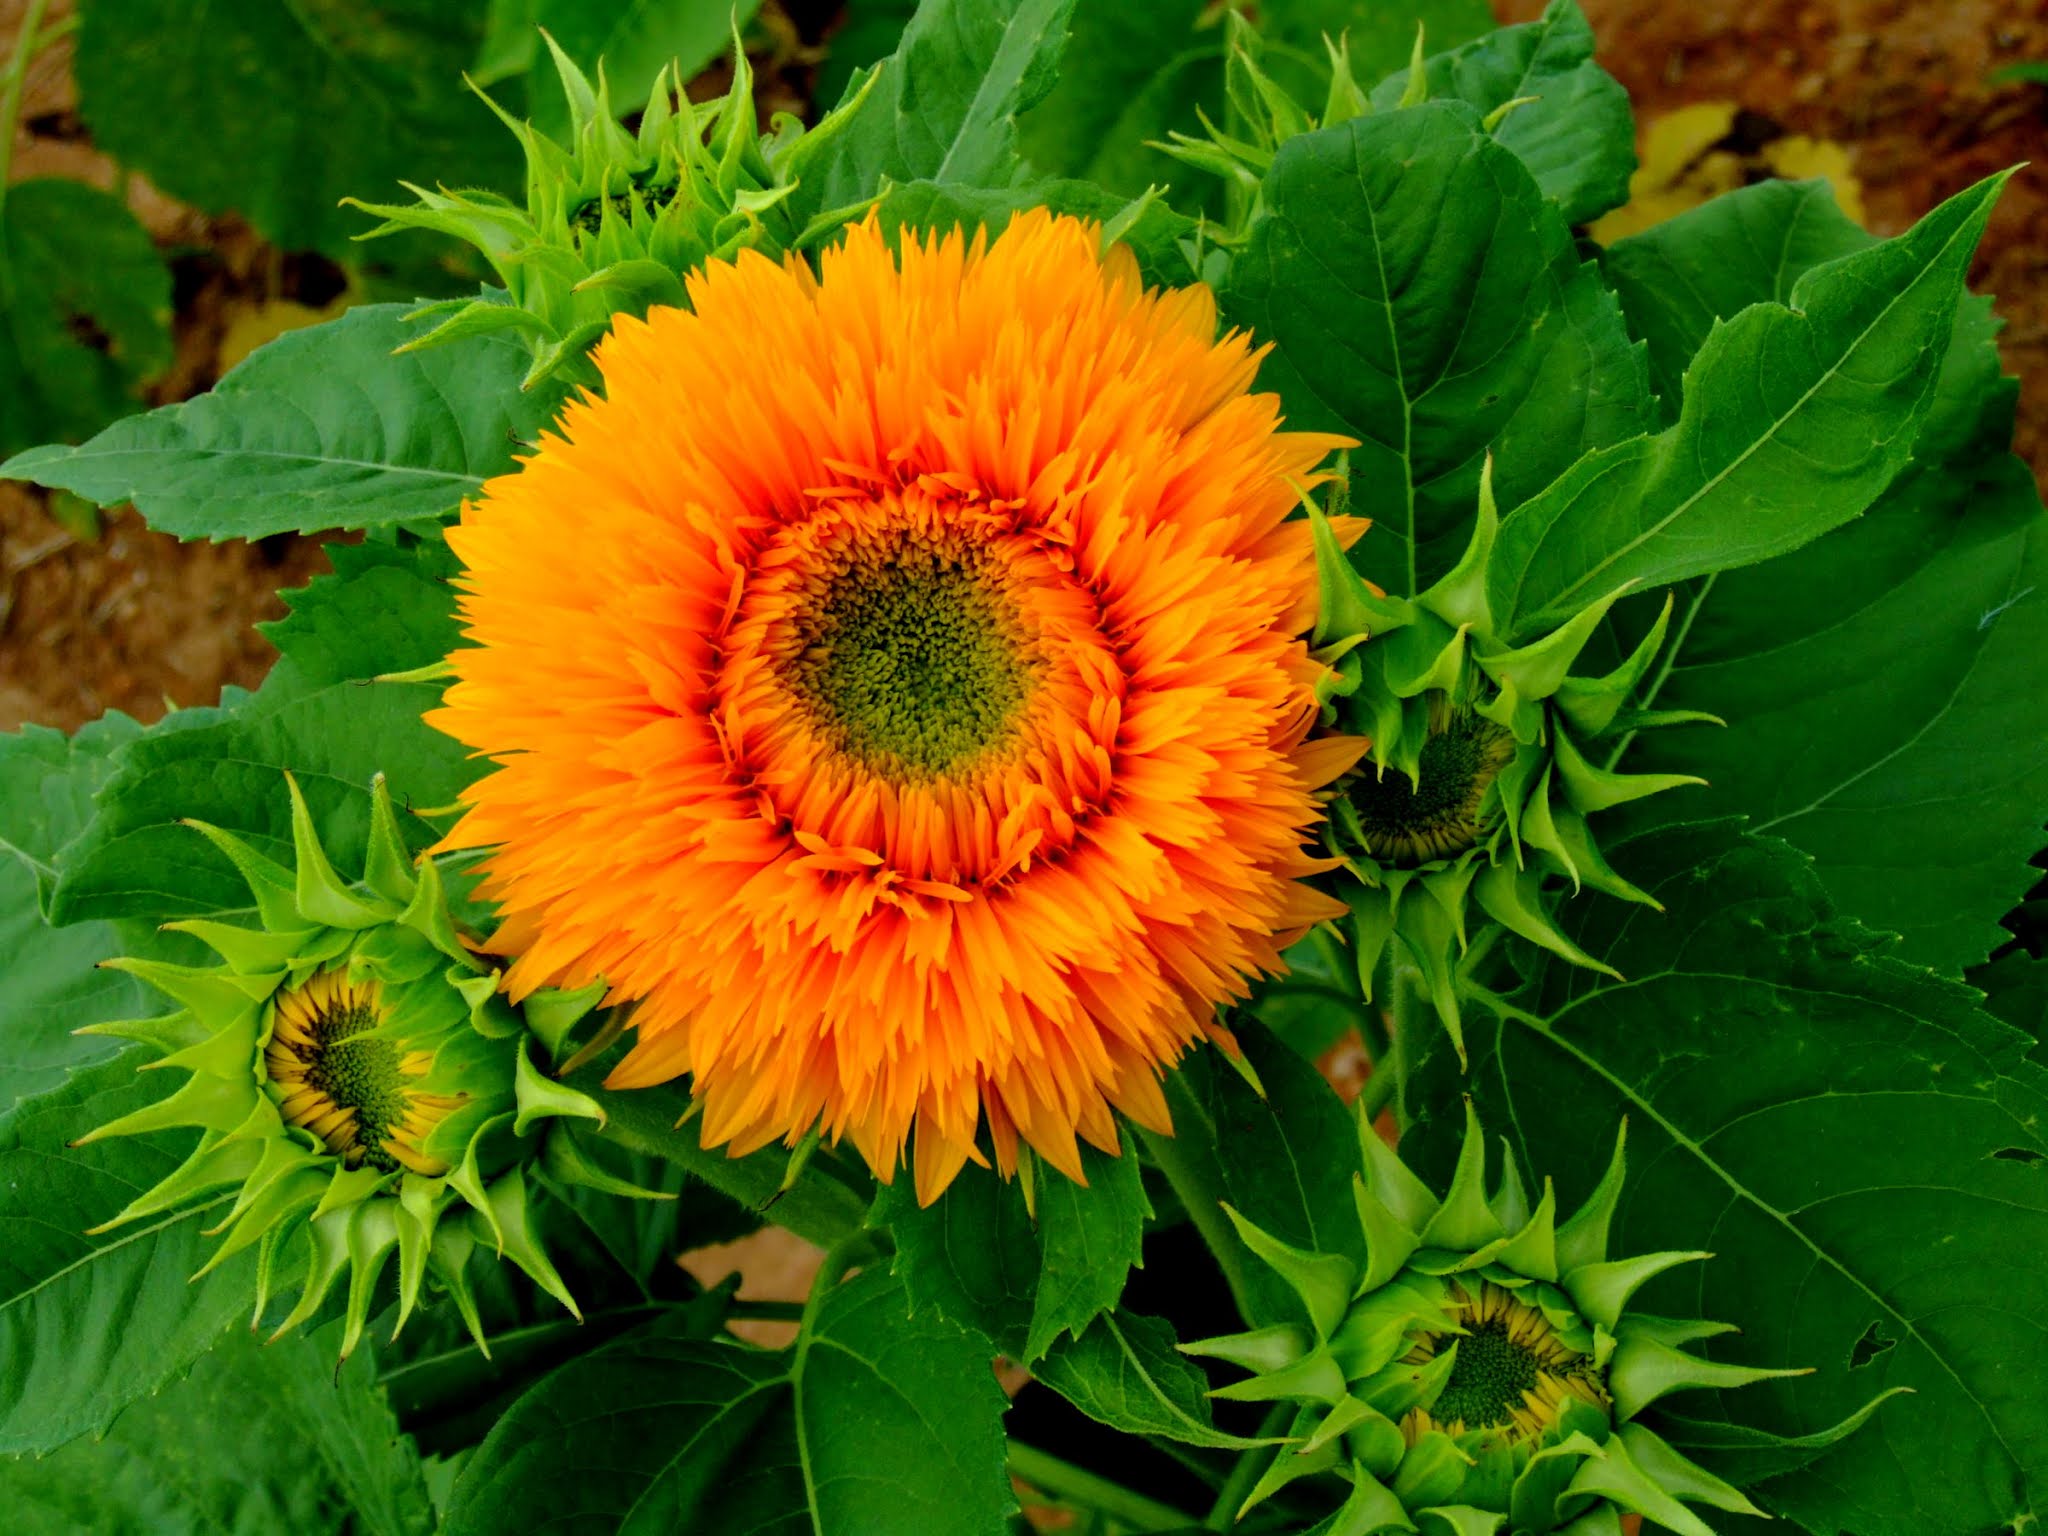 青空 黄色い向日葵（ヒマワリ） ひまわり写真素材 ゴッホのひまわり blue sky,yellow sunflower,photo stock,Van Gogh's sunflower